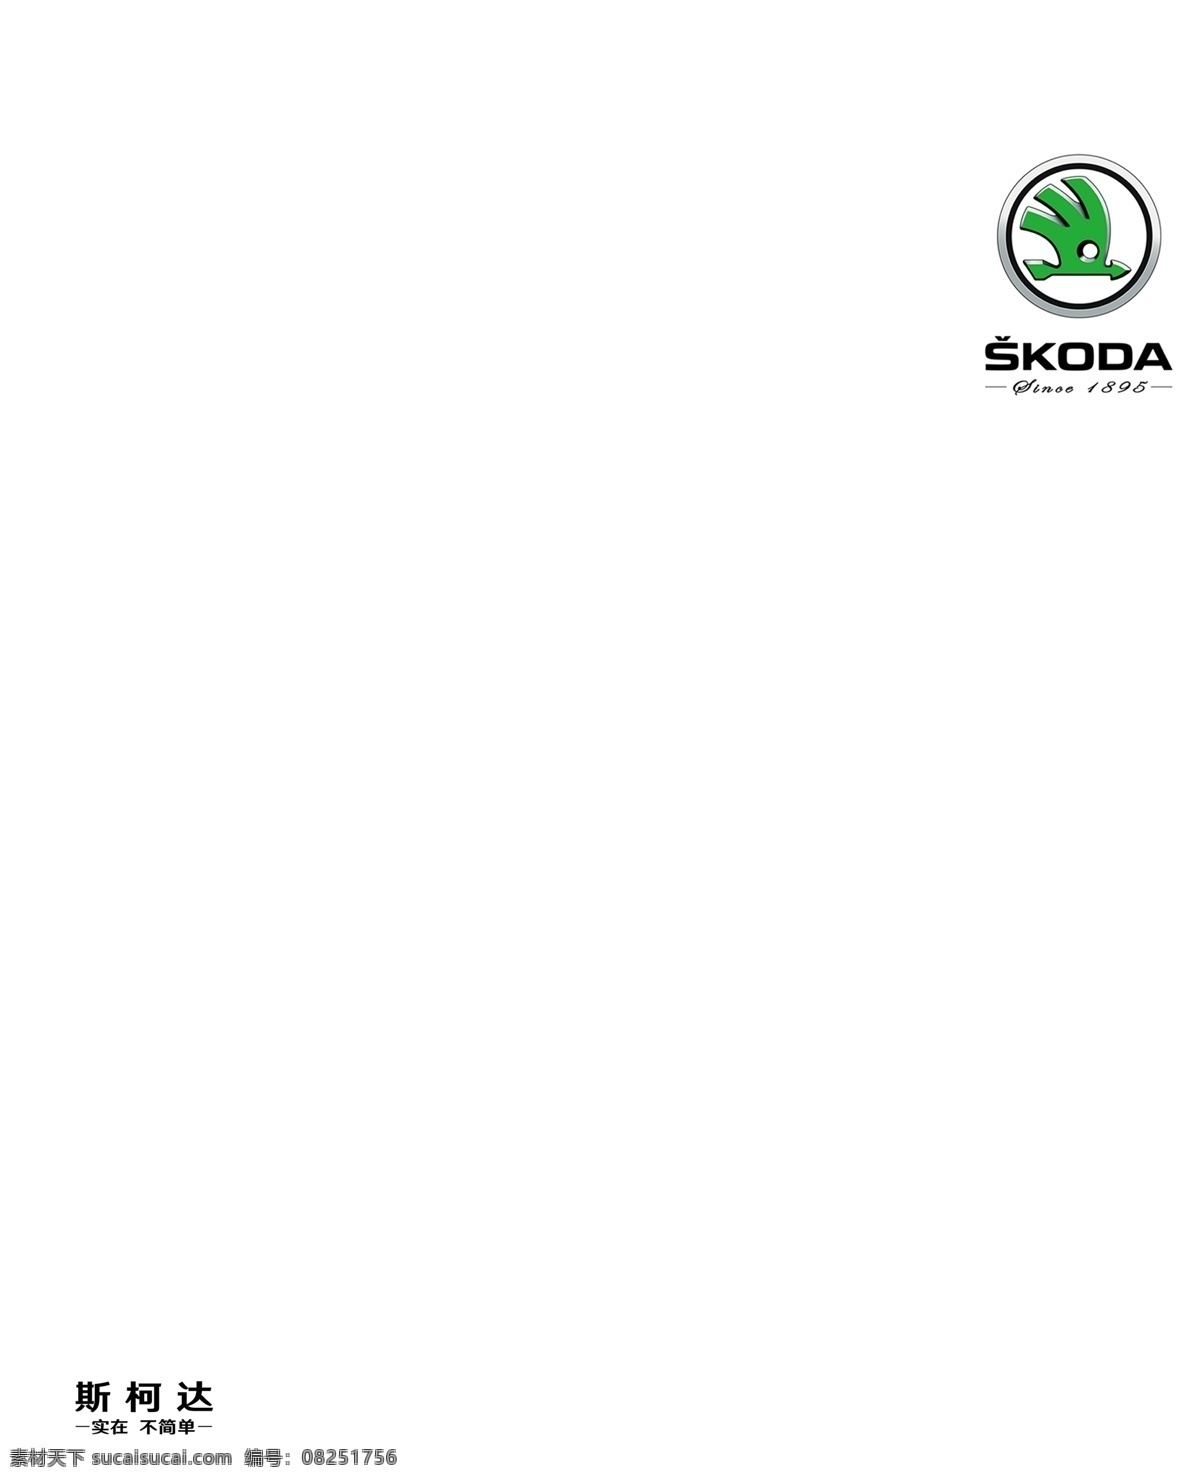 斯 柯达 新 logo 彩页 模版 斯柯达 最新logo 汽车 汽车logo 斯柯达彩页 国内广告设计